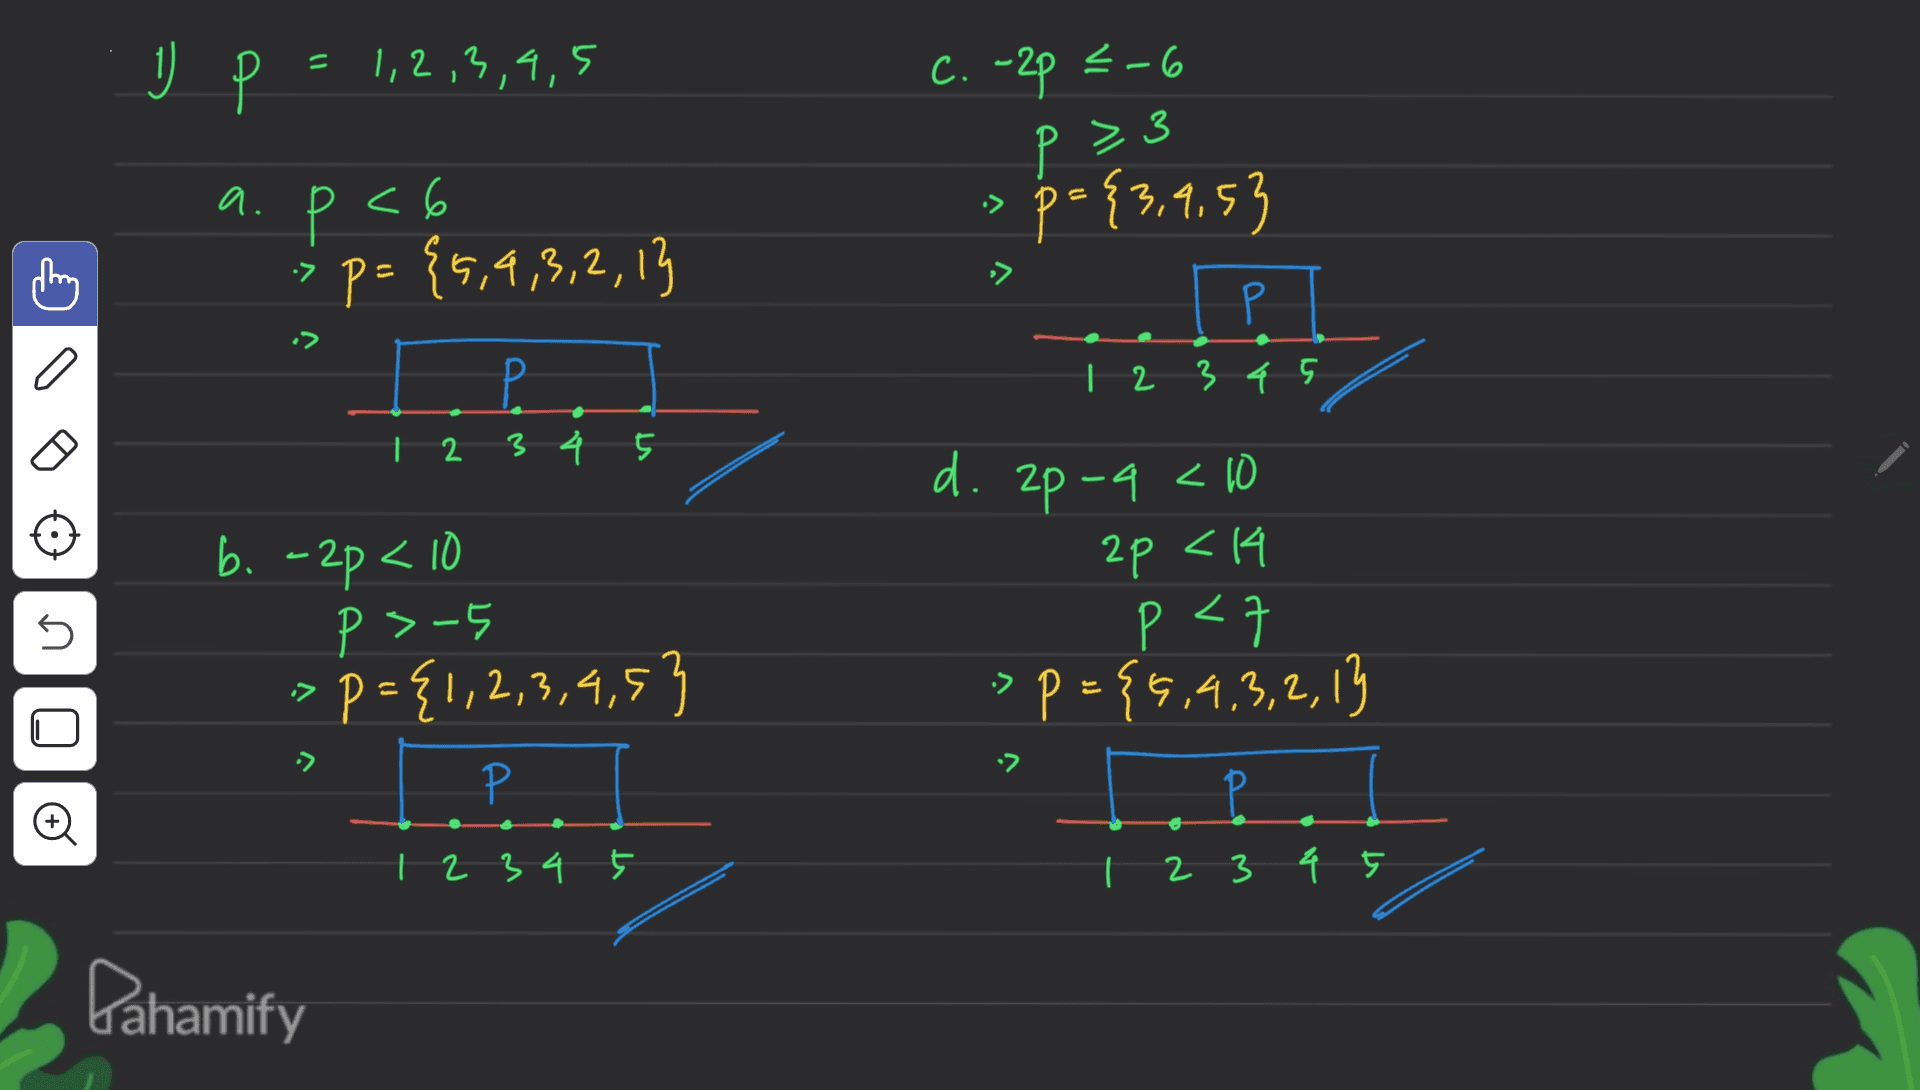 Р = 1,2,3,4,5 C. -2p 3-6 p= > a. Р <6 *p={5,4,3,2,13 » 3.1.53 p = {3,9,53 :> = Р P 1 2 3 4 5 123457 d. 2p -4 <10 2p <4 < n b. -2p < 10 p 3-5 op={1,2,3,4,5) p <7 P p={5,4,3,2,13 - -> P 1 2 3 4 2 3 4 5 Dahamify 